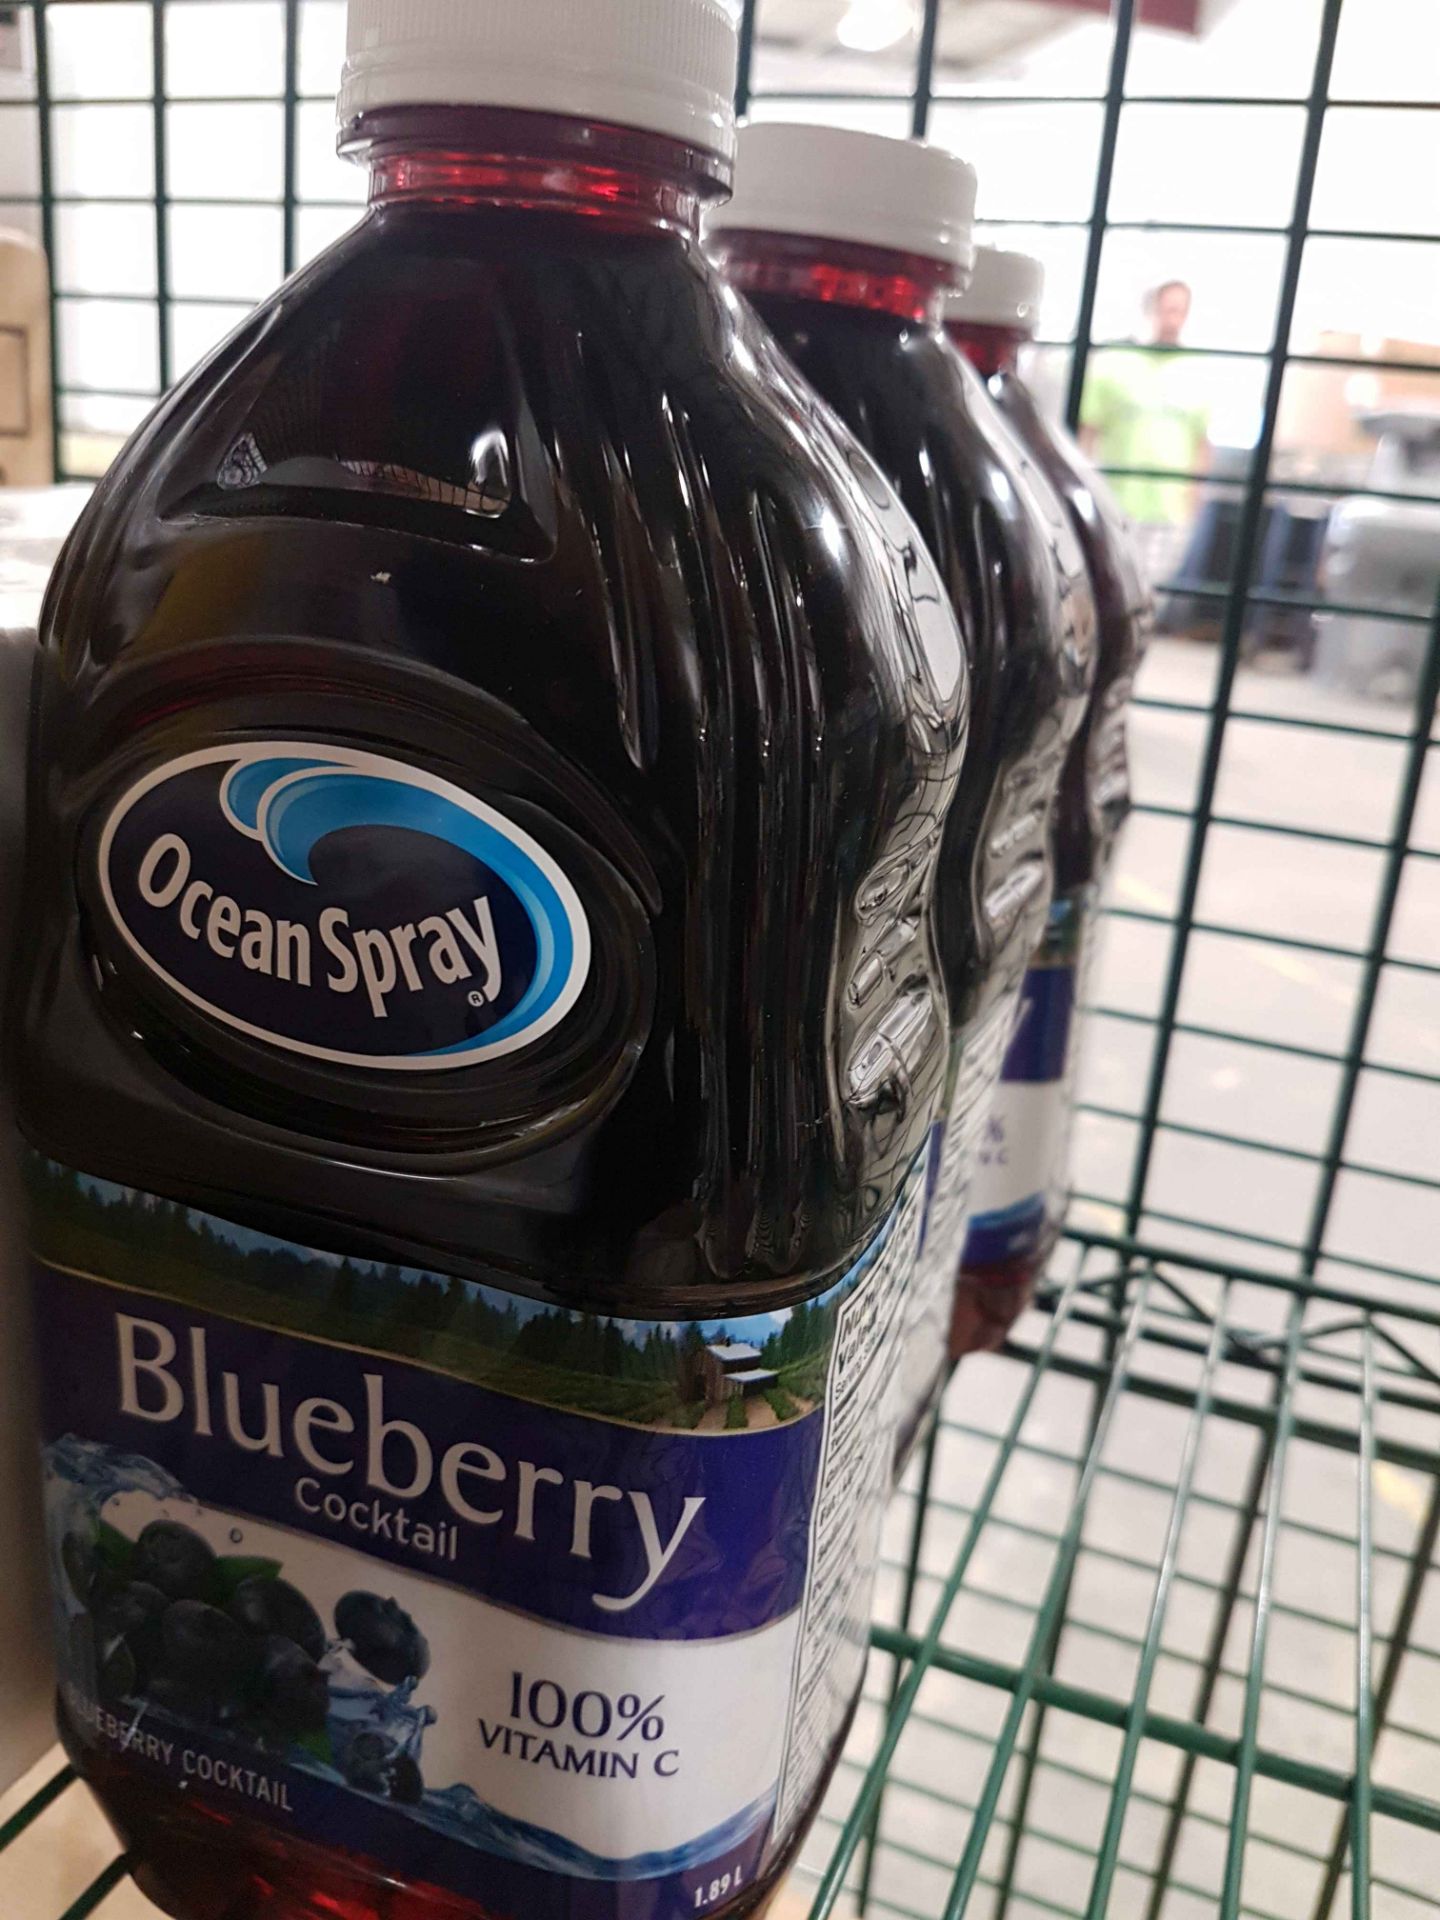 Ocean Spray Blueberry Cocktail - 3 x 1.89LT Bottles - Image 2 of 3